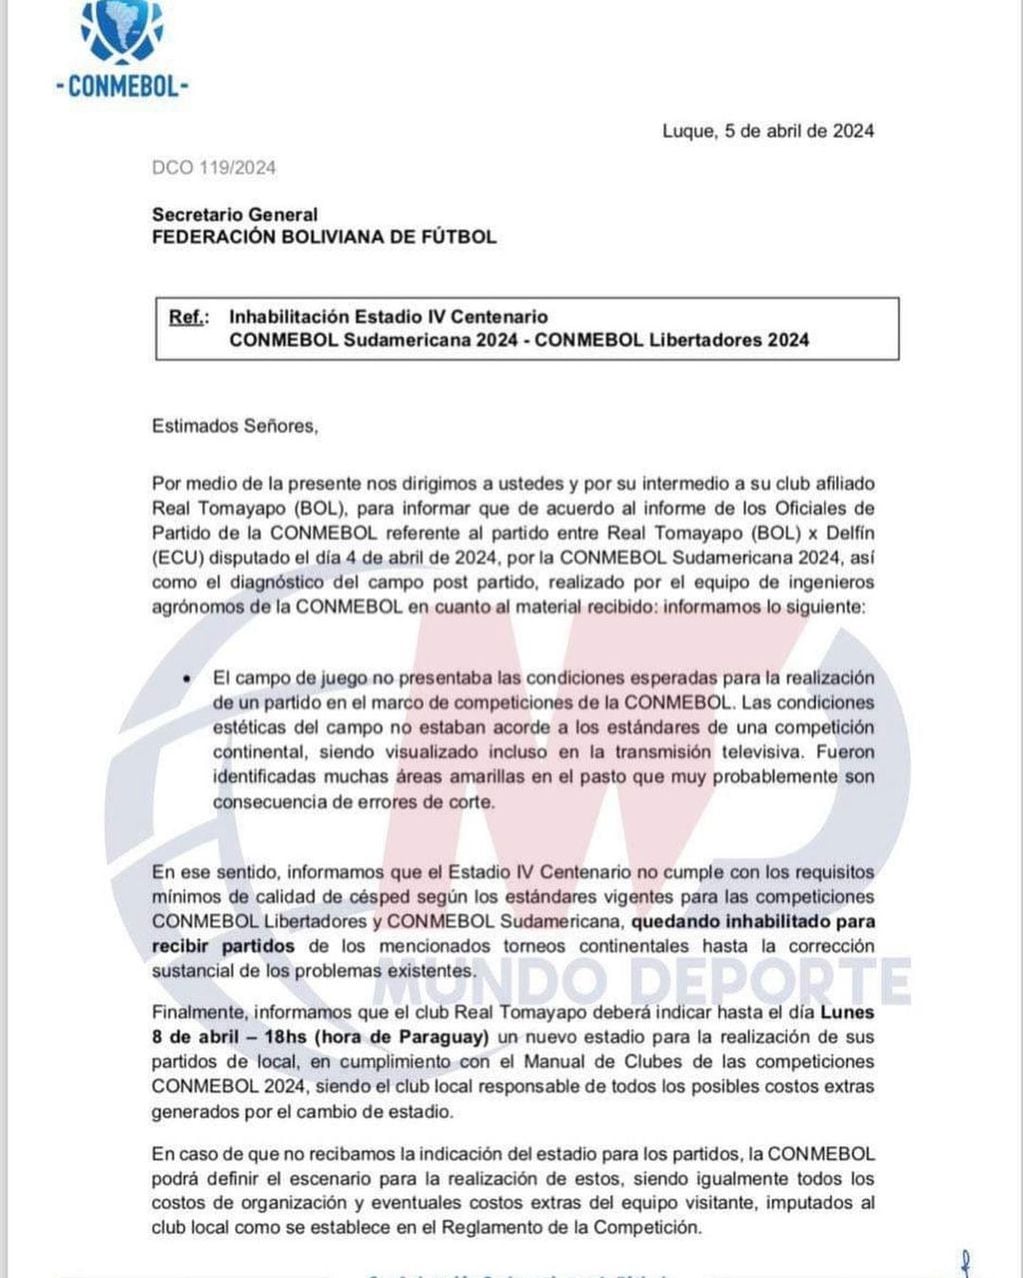 El comunicado de Conmebol explicando los motivos de la inhabilitación del estadio.